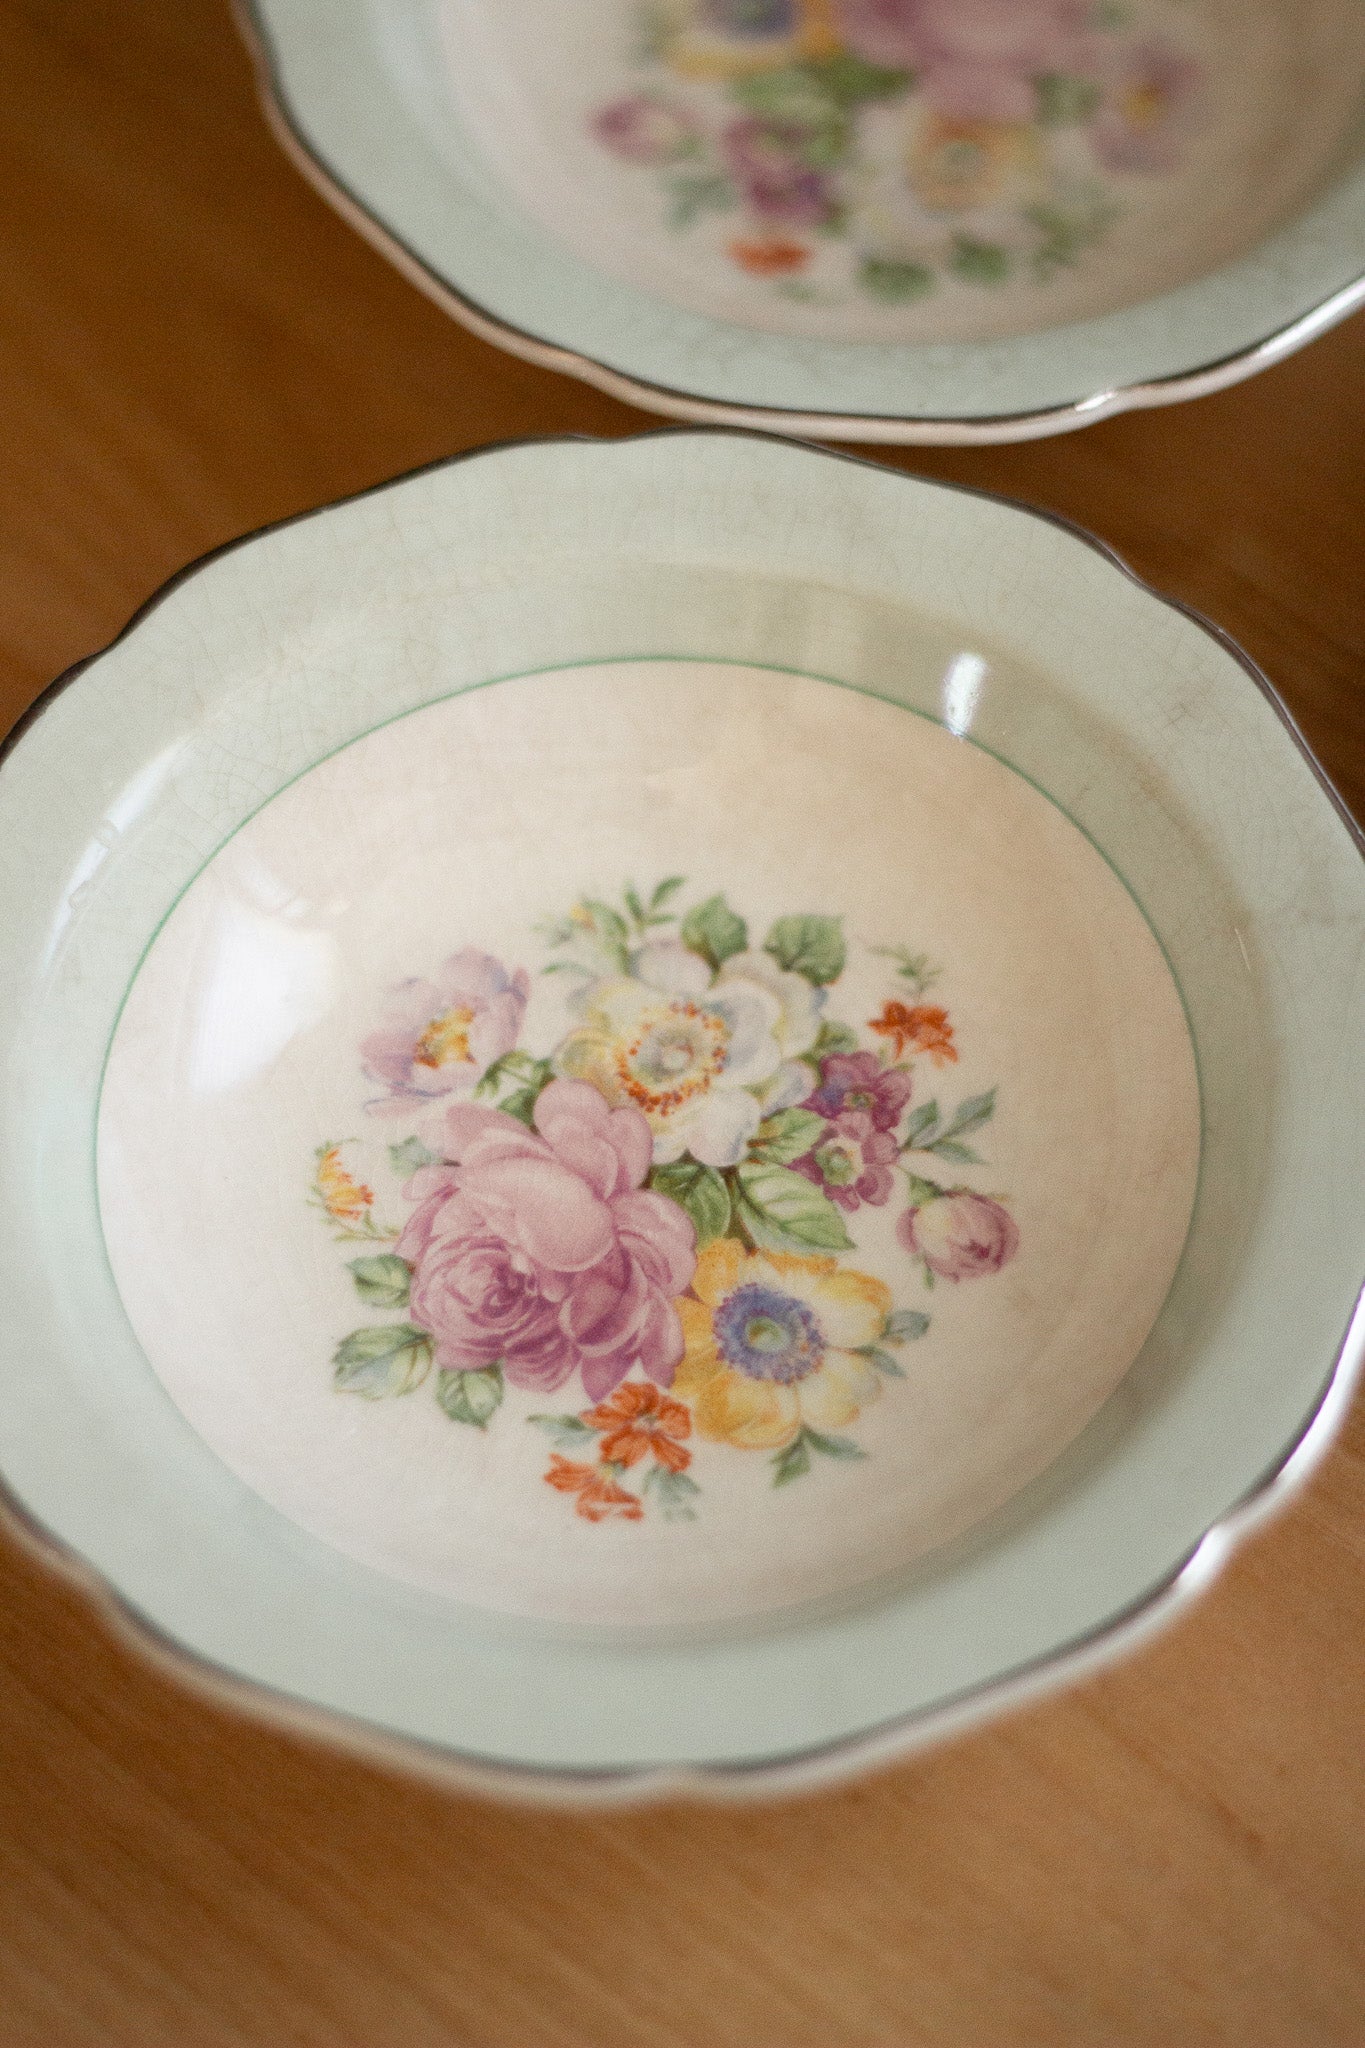 Vintage Serving Dishes in Sage Floral